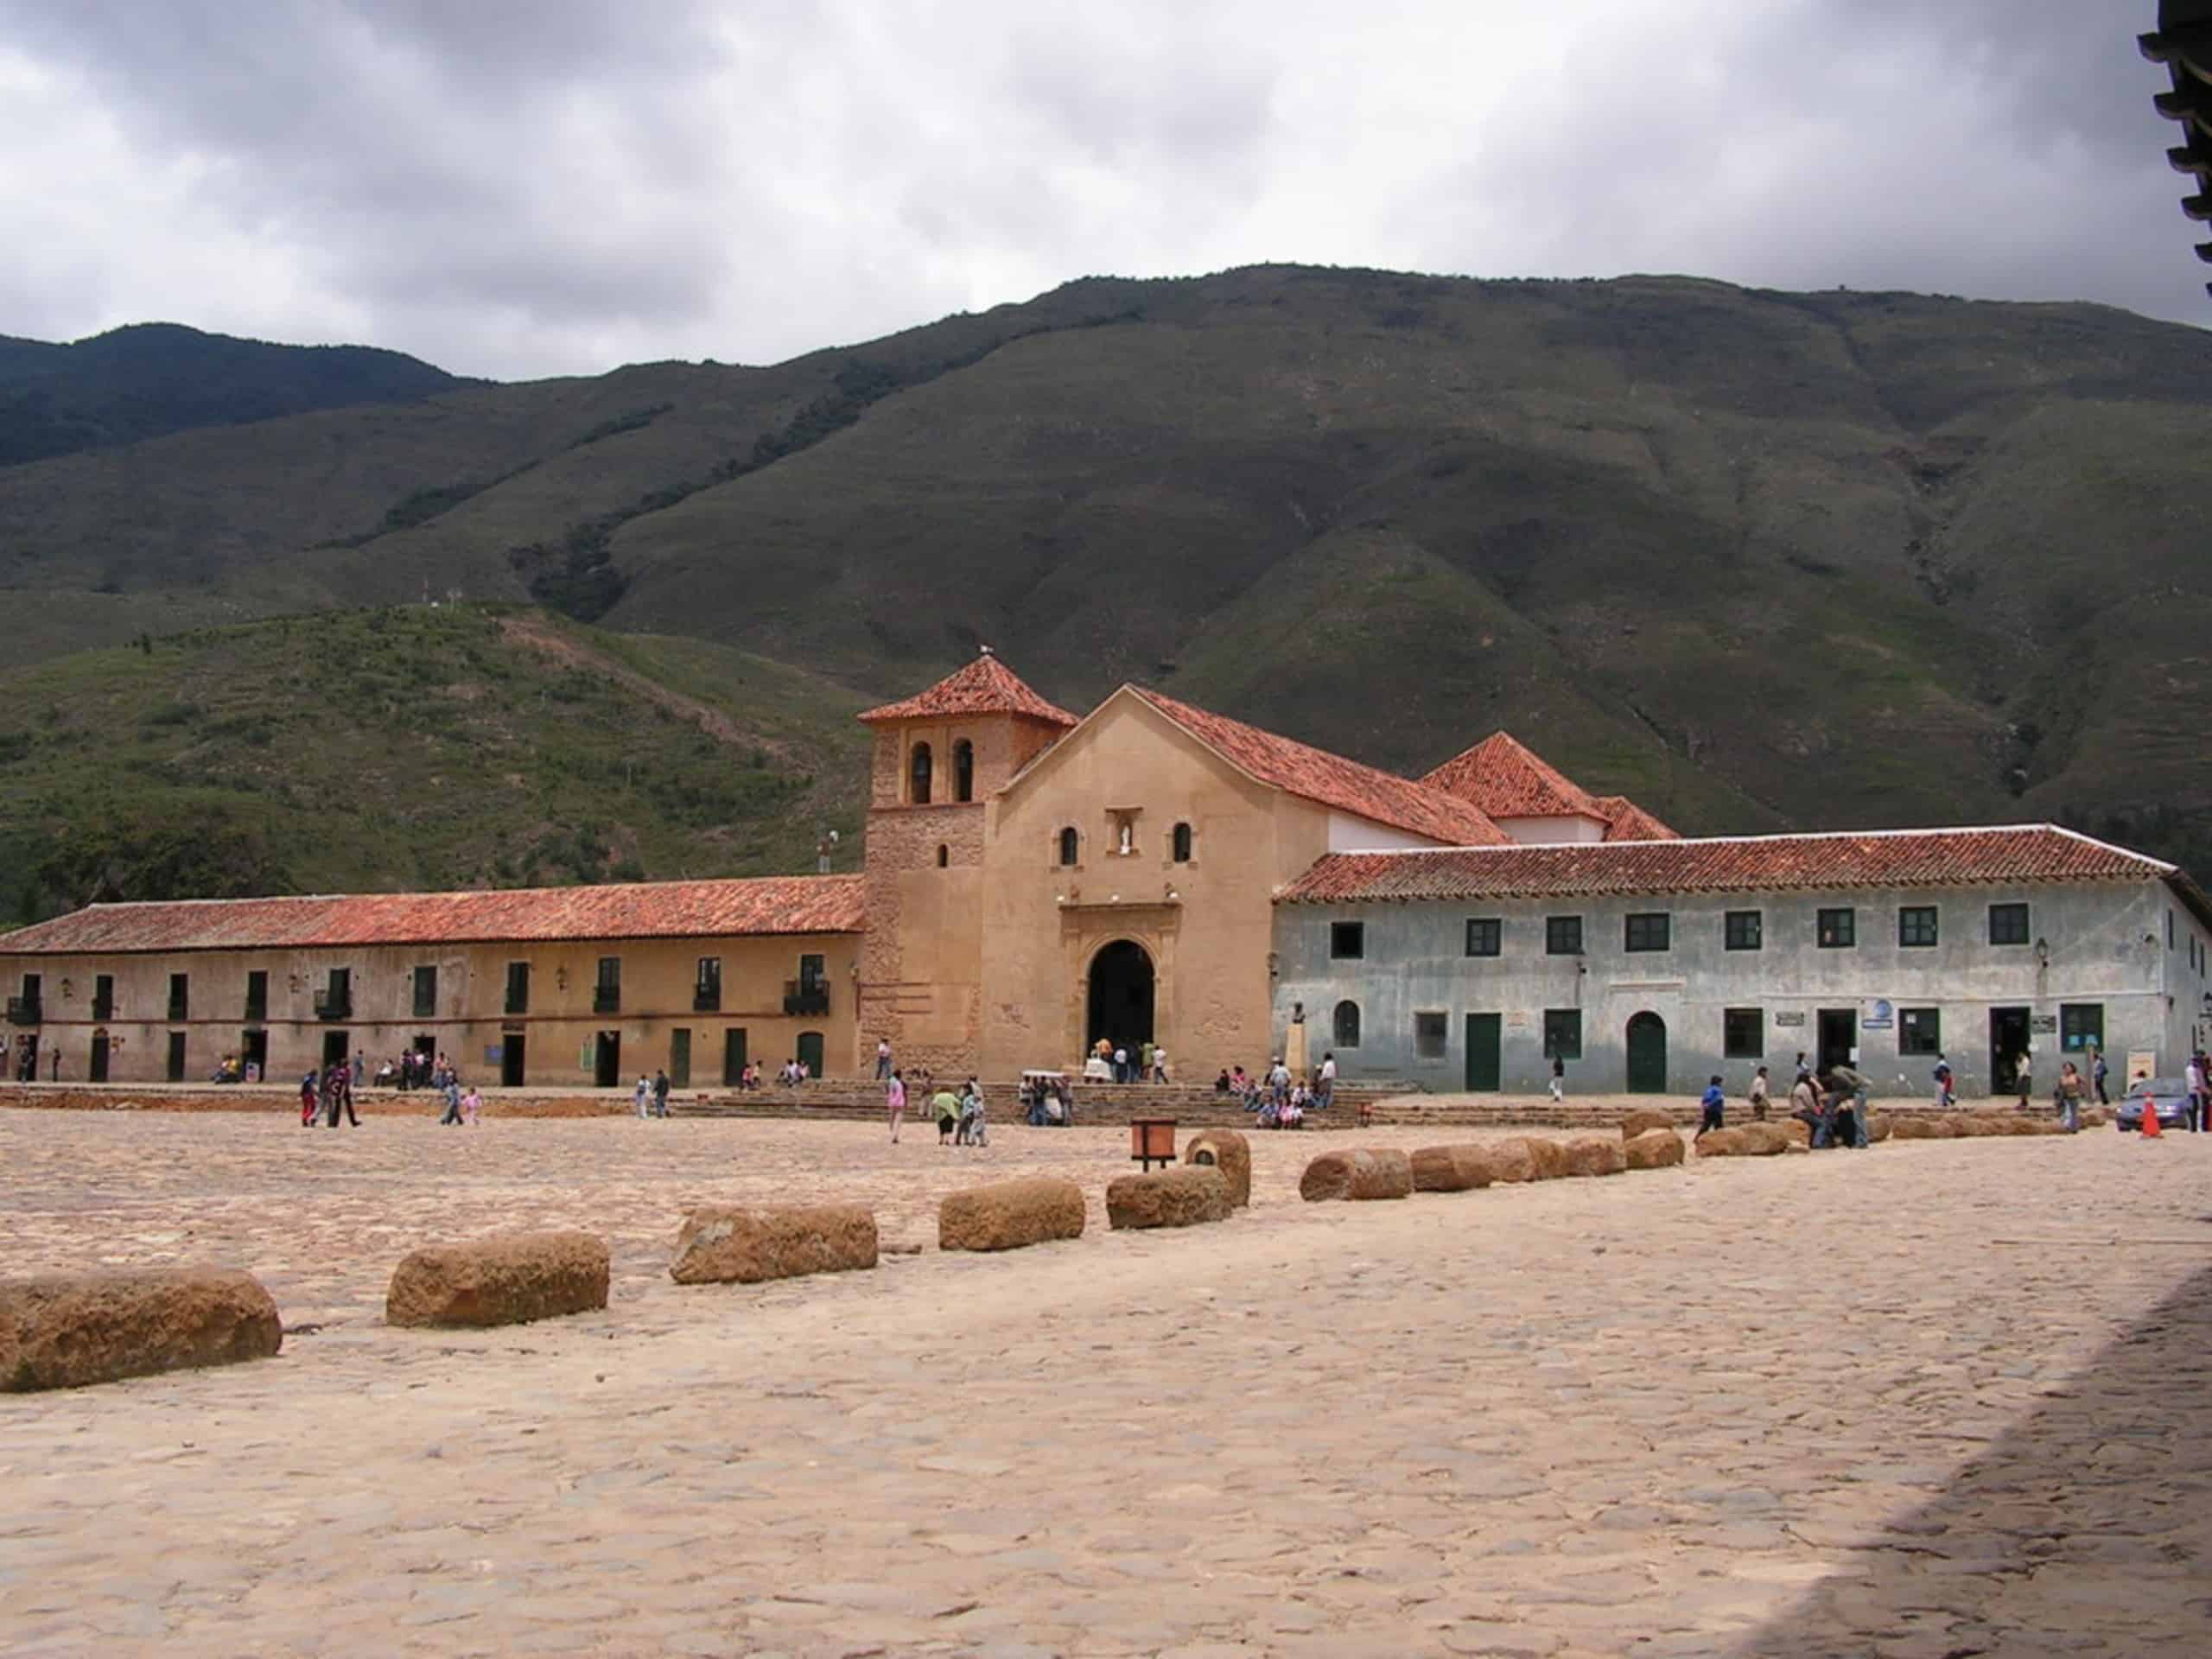 Colombia Villa de Leyva